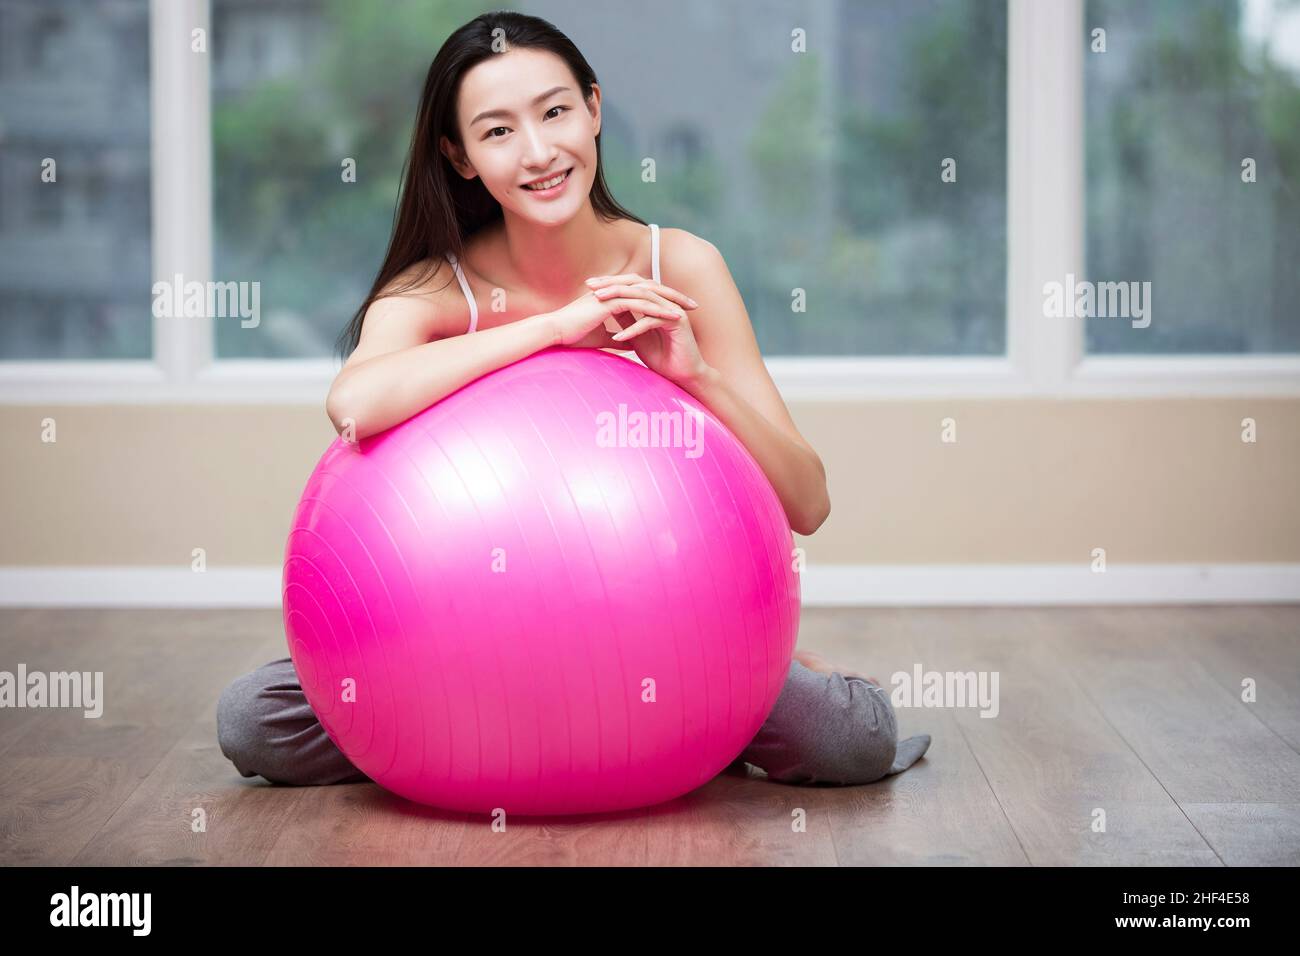 Giovane donna che riposa contro la palla fitness Foto Stock